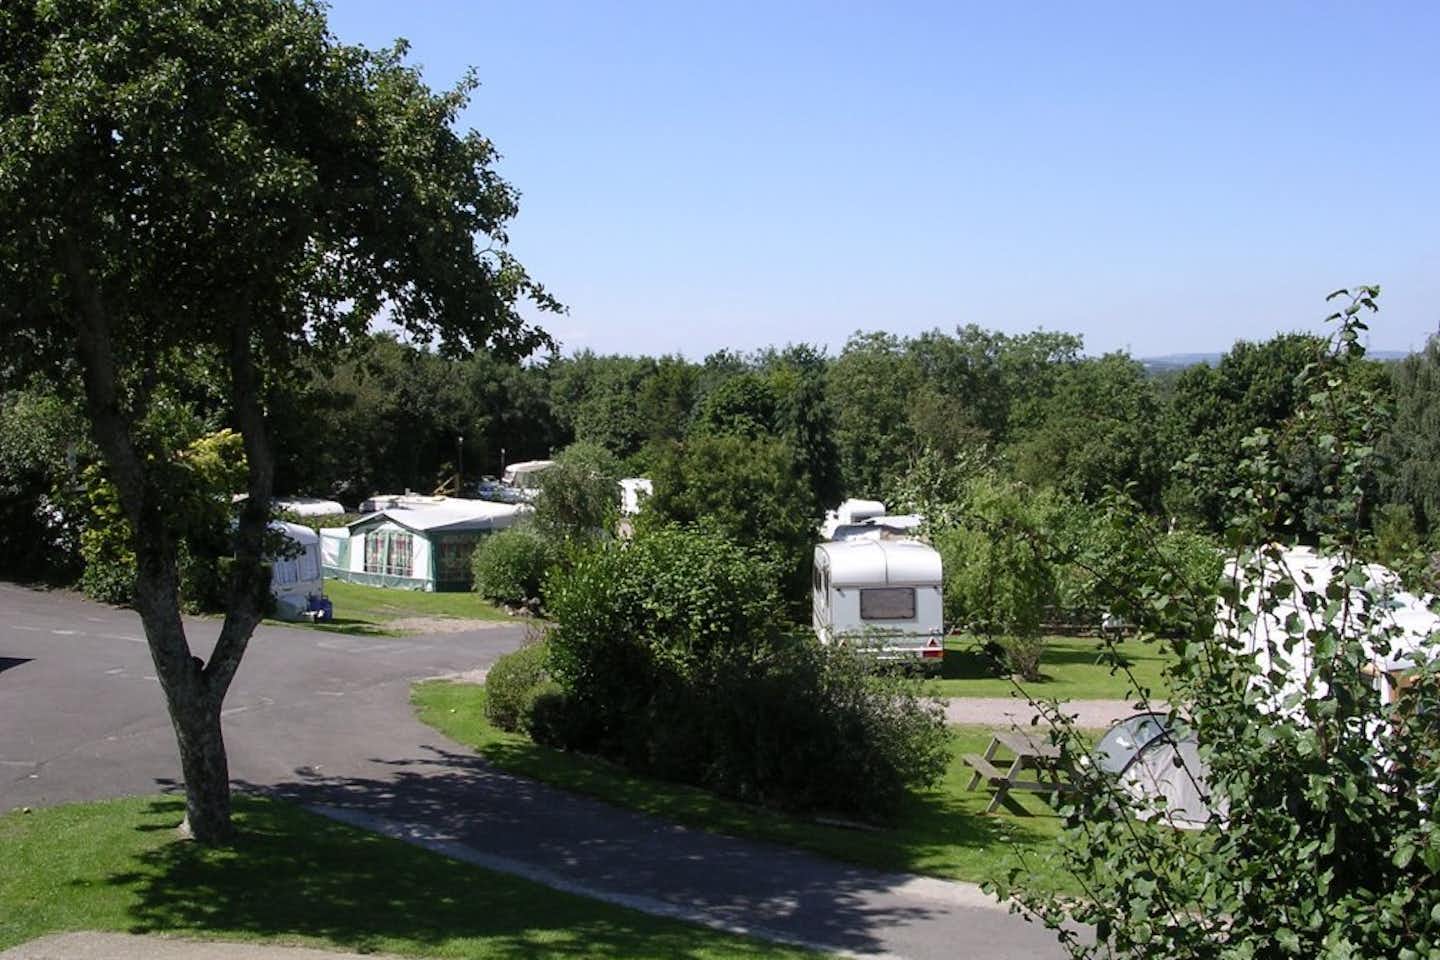 Charris Camping & Caravan Park -Campingbereich für Zelte und Wohnwagen im Schatten der Bäume